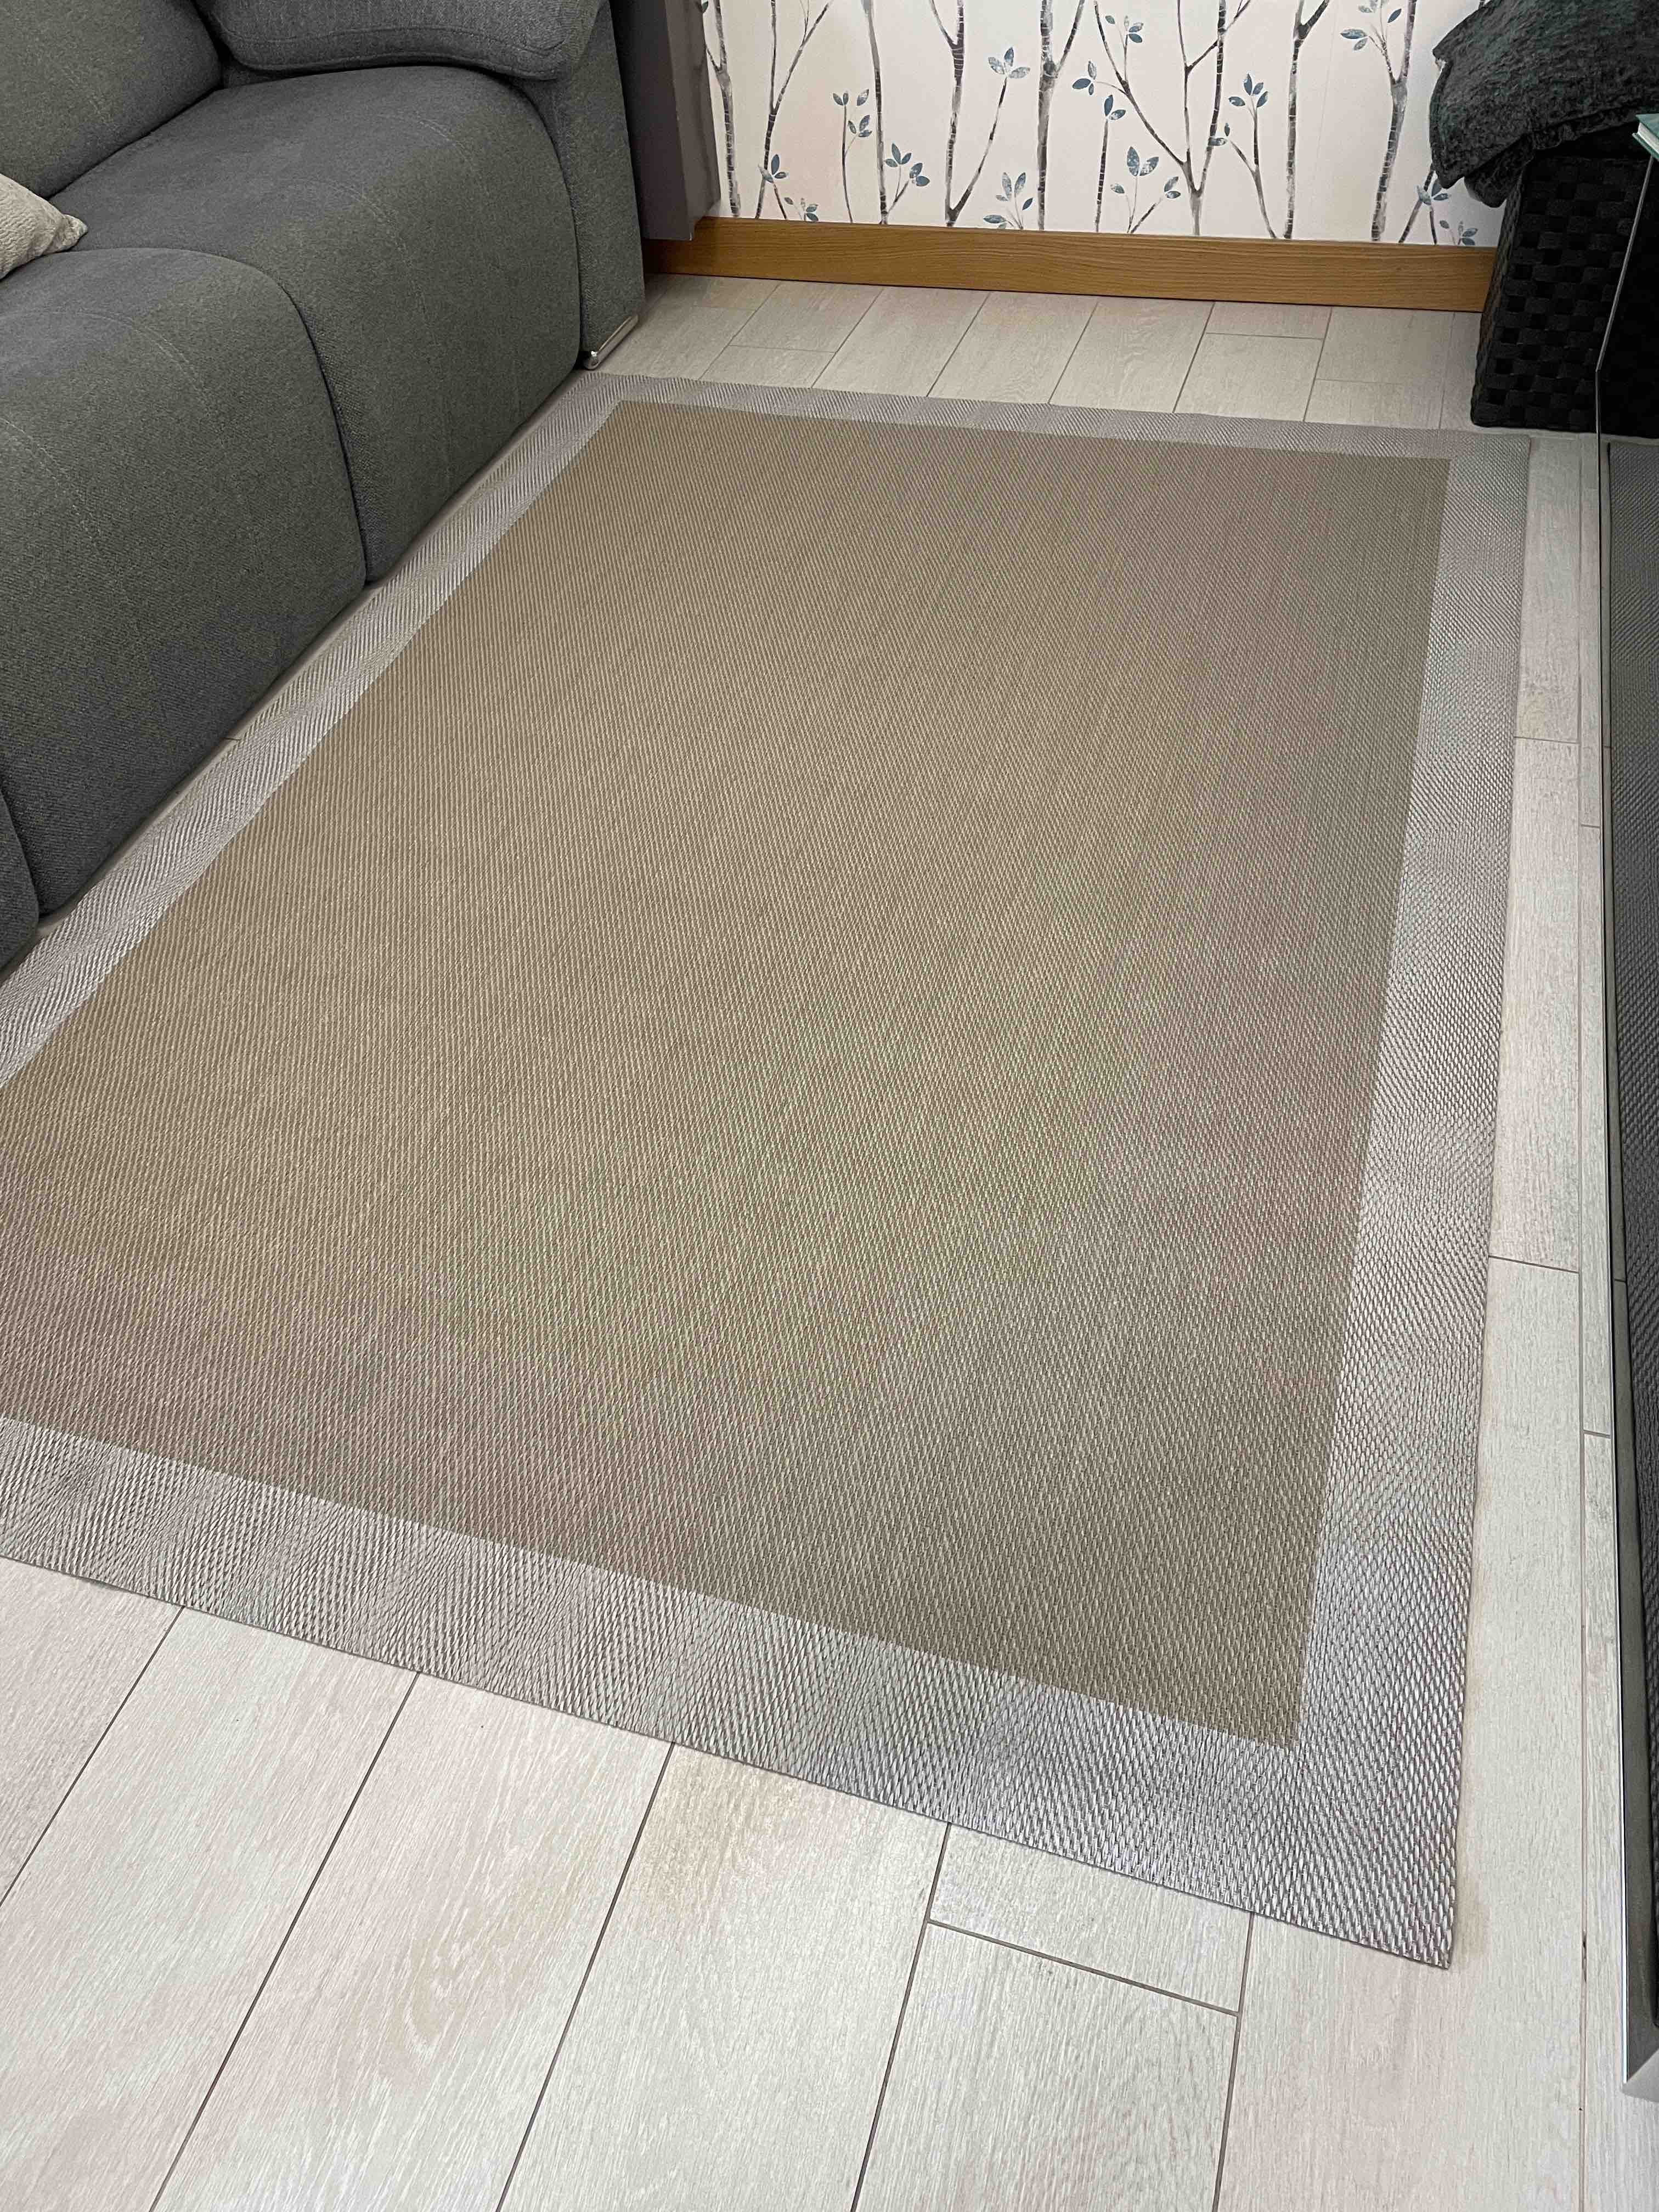 Alfombra vinílica acolchada, alfombra estampada de PVC, lavable y